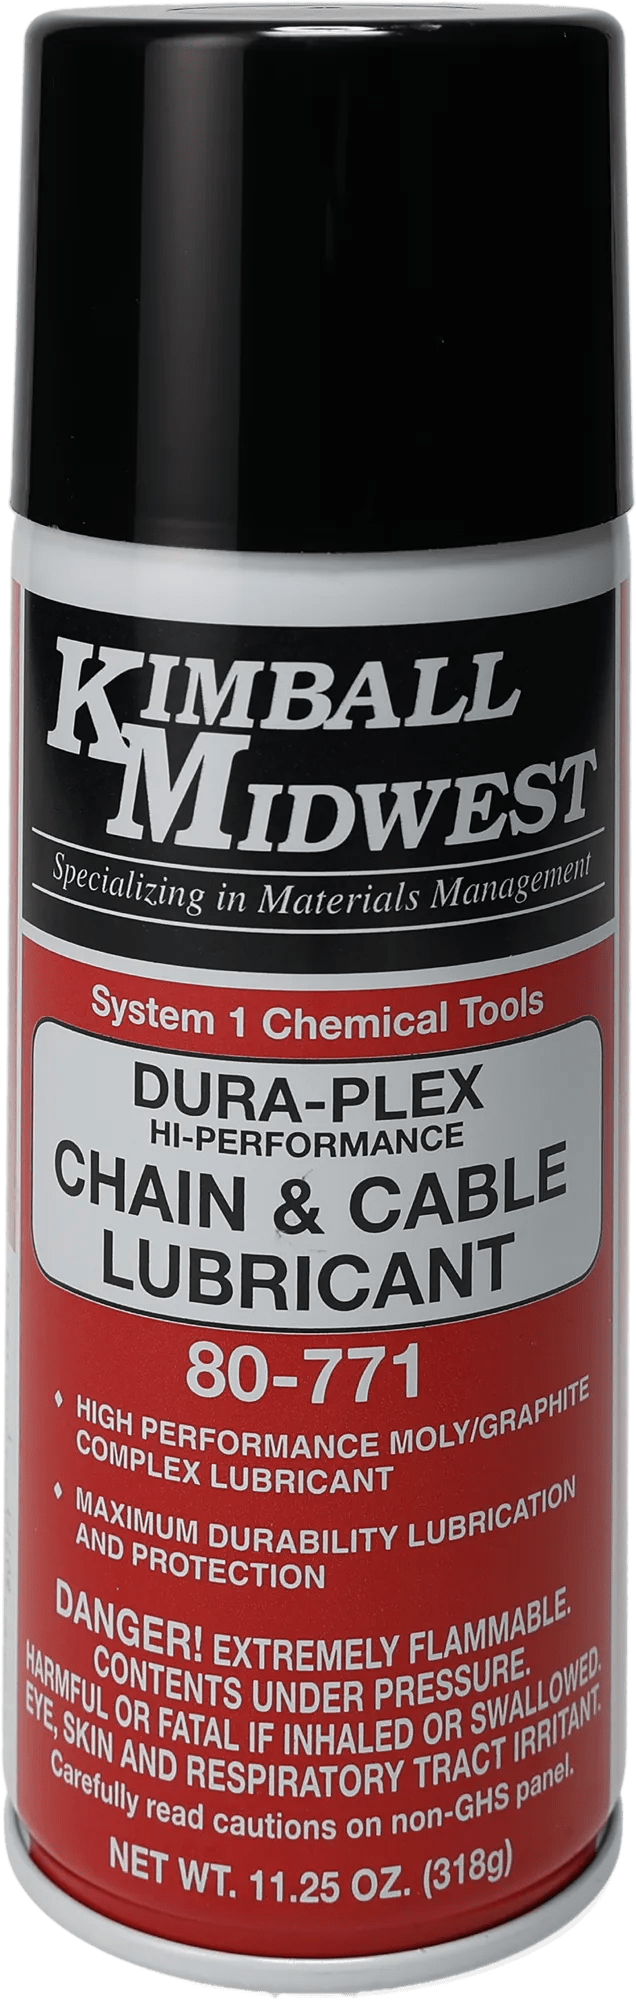 Dura-Plex Chain & Cable Lubricant